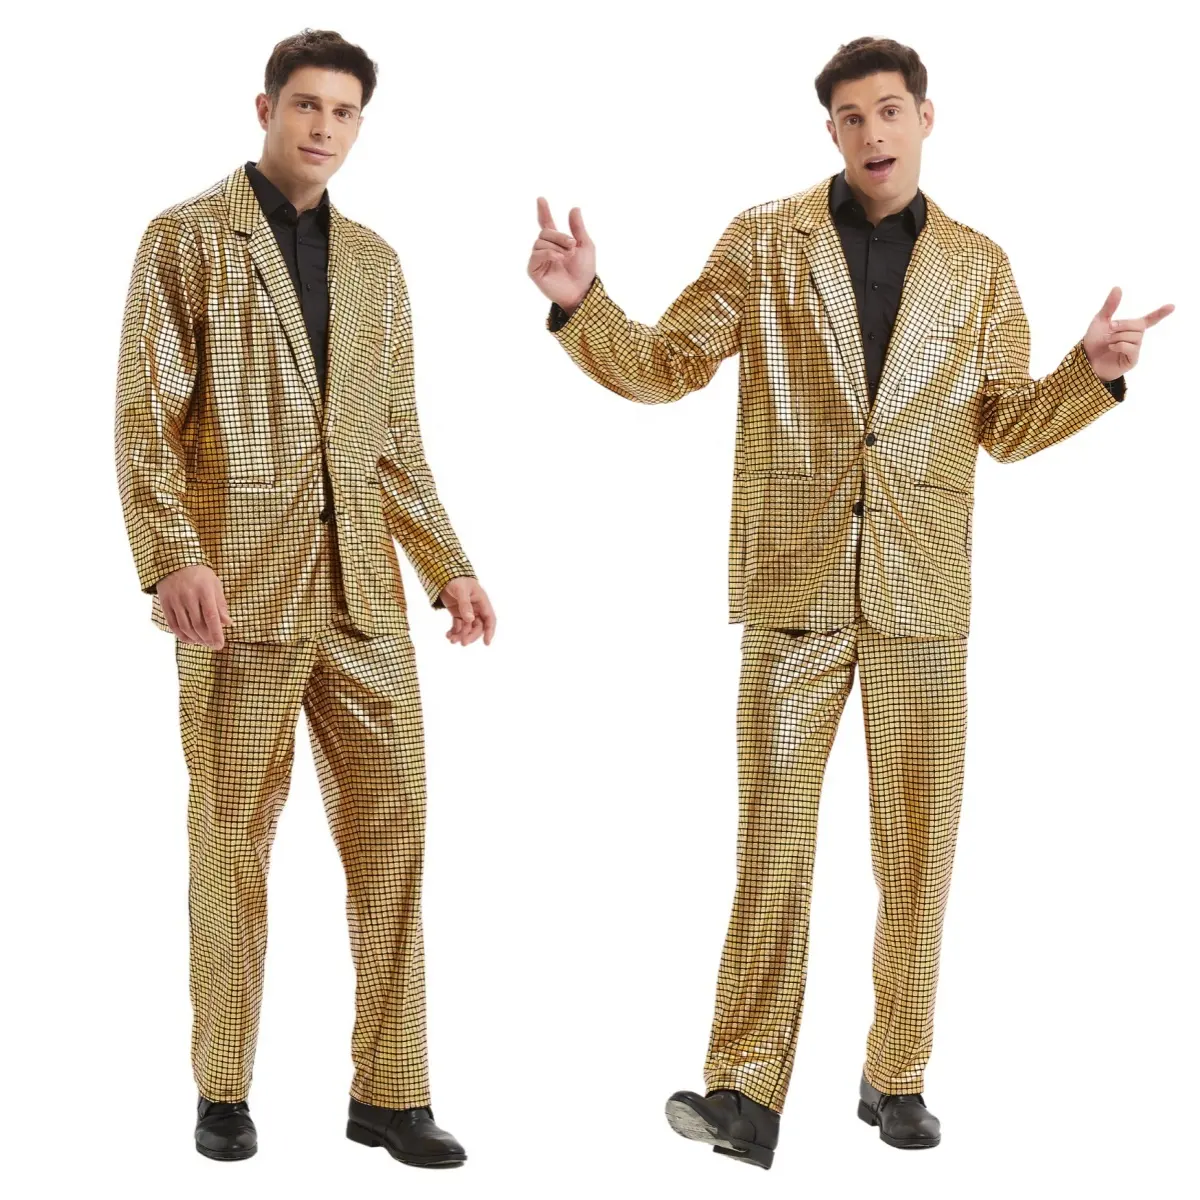 Costume à paillettes laser dorées pour hommes, veste habillée pour fête d'Halloween et anniversaire, pantalon, costume de bal de promo disco inspiré de la télévision et des films